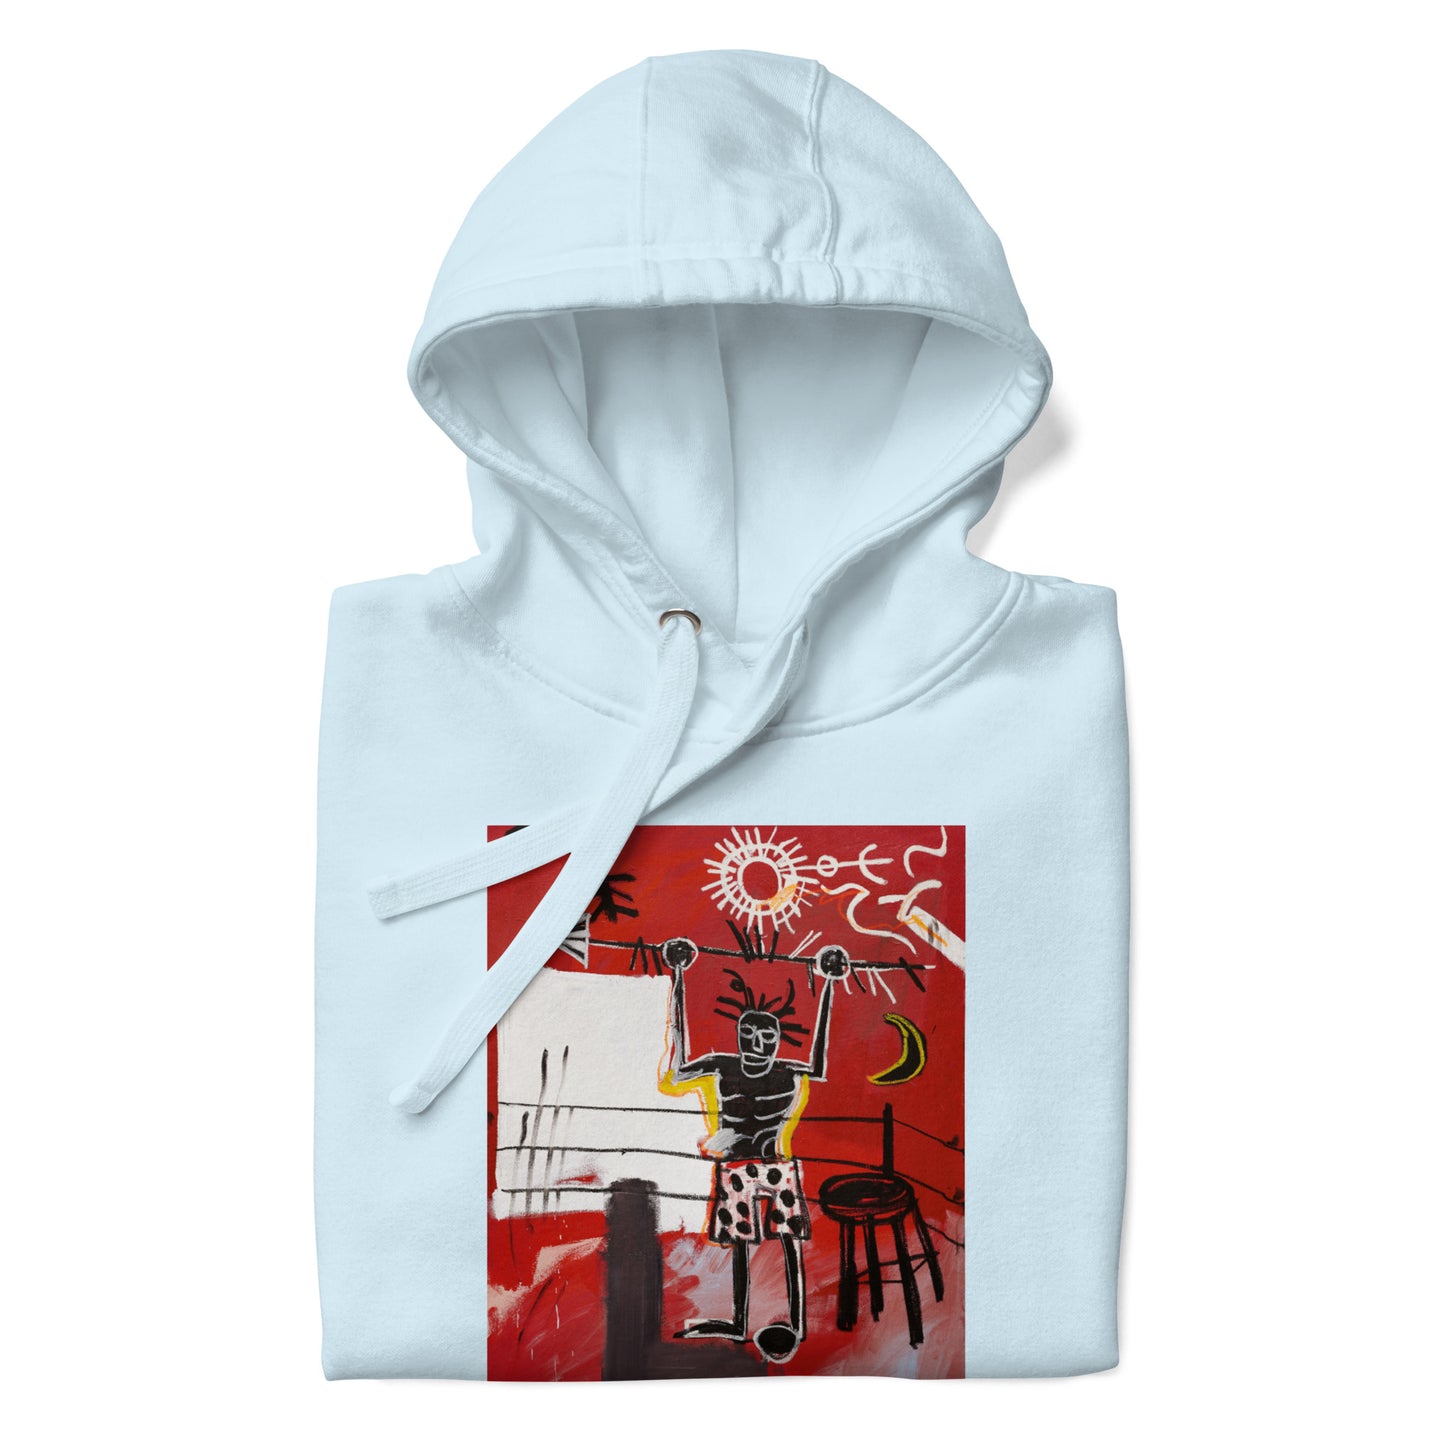 Jean-Michel Basquiat "The Ring" Artwork Printed Premium Streetwear Sweatshirt Hoodie Ice Blue